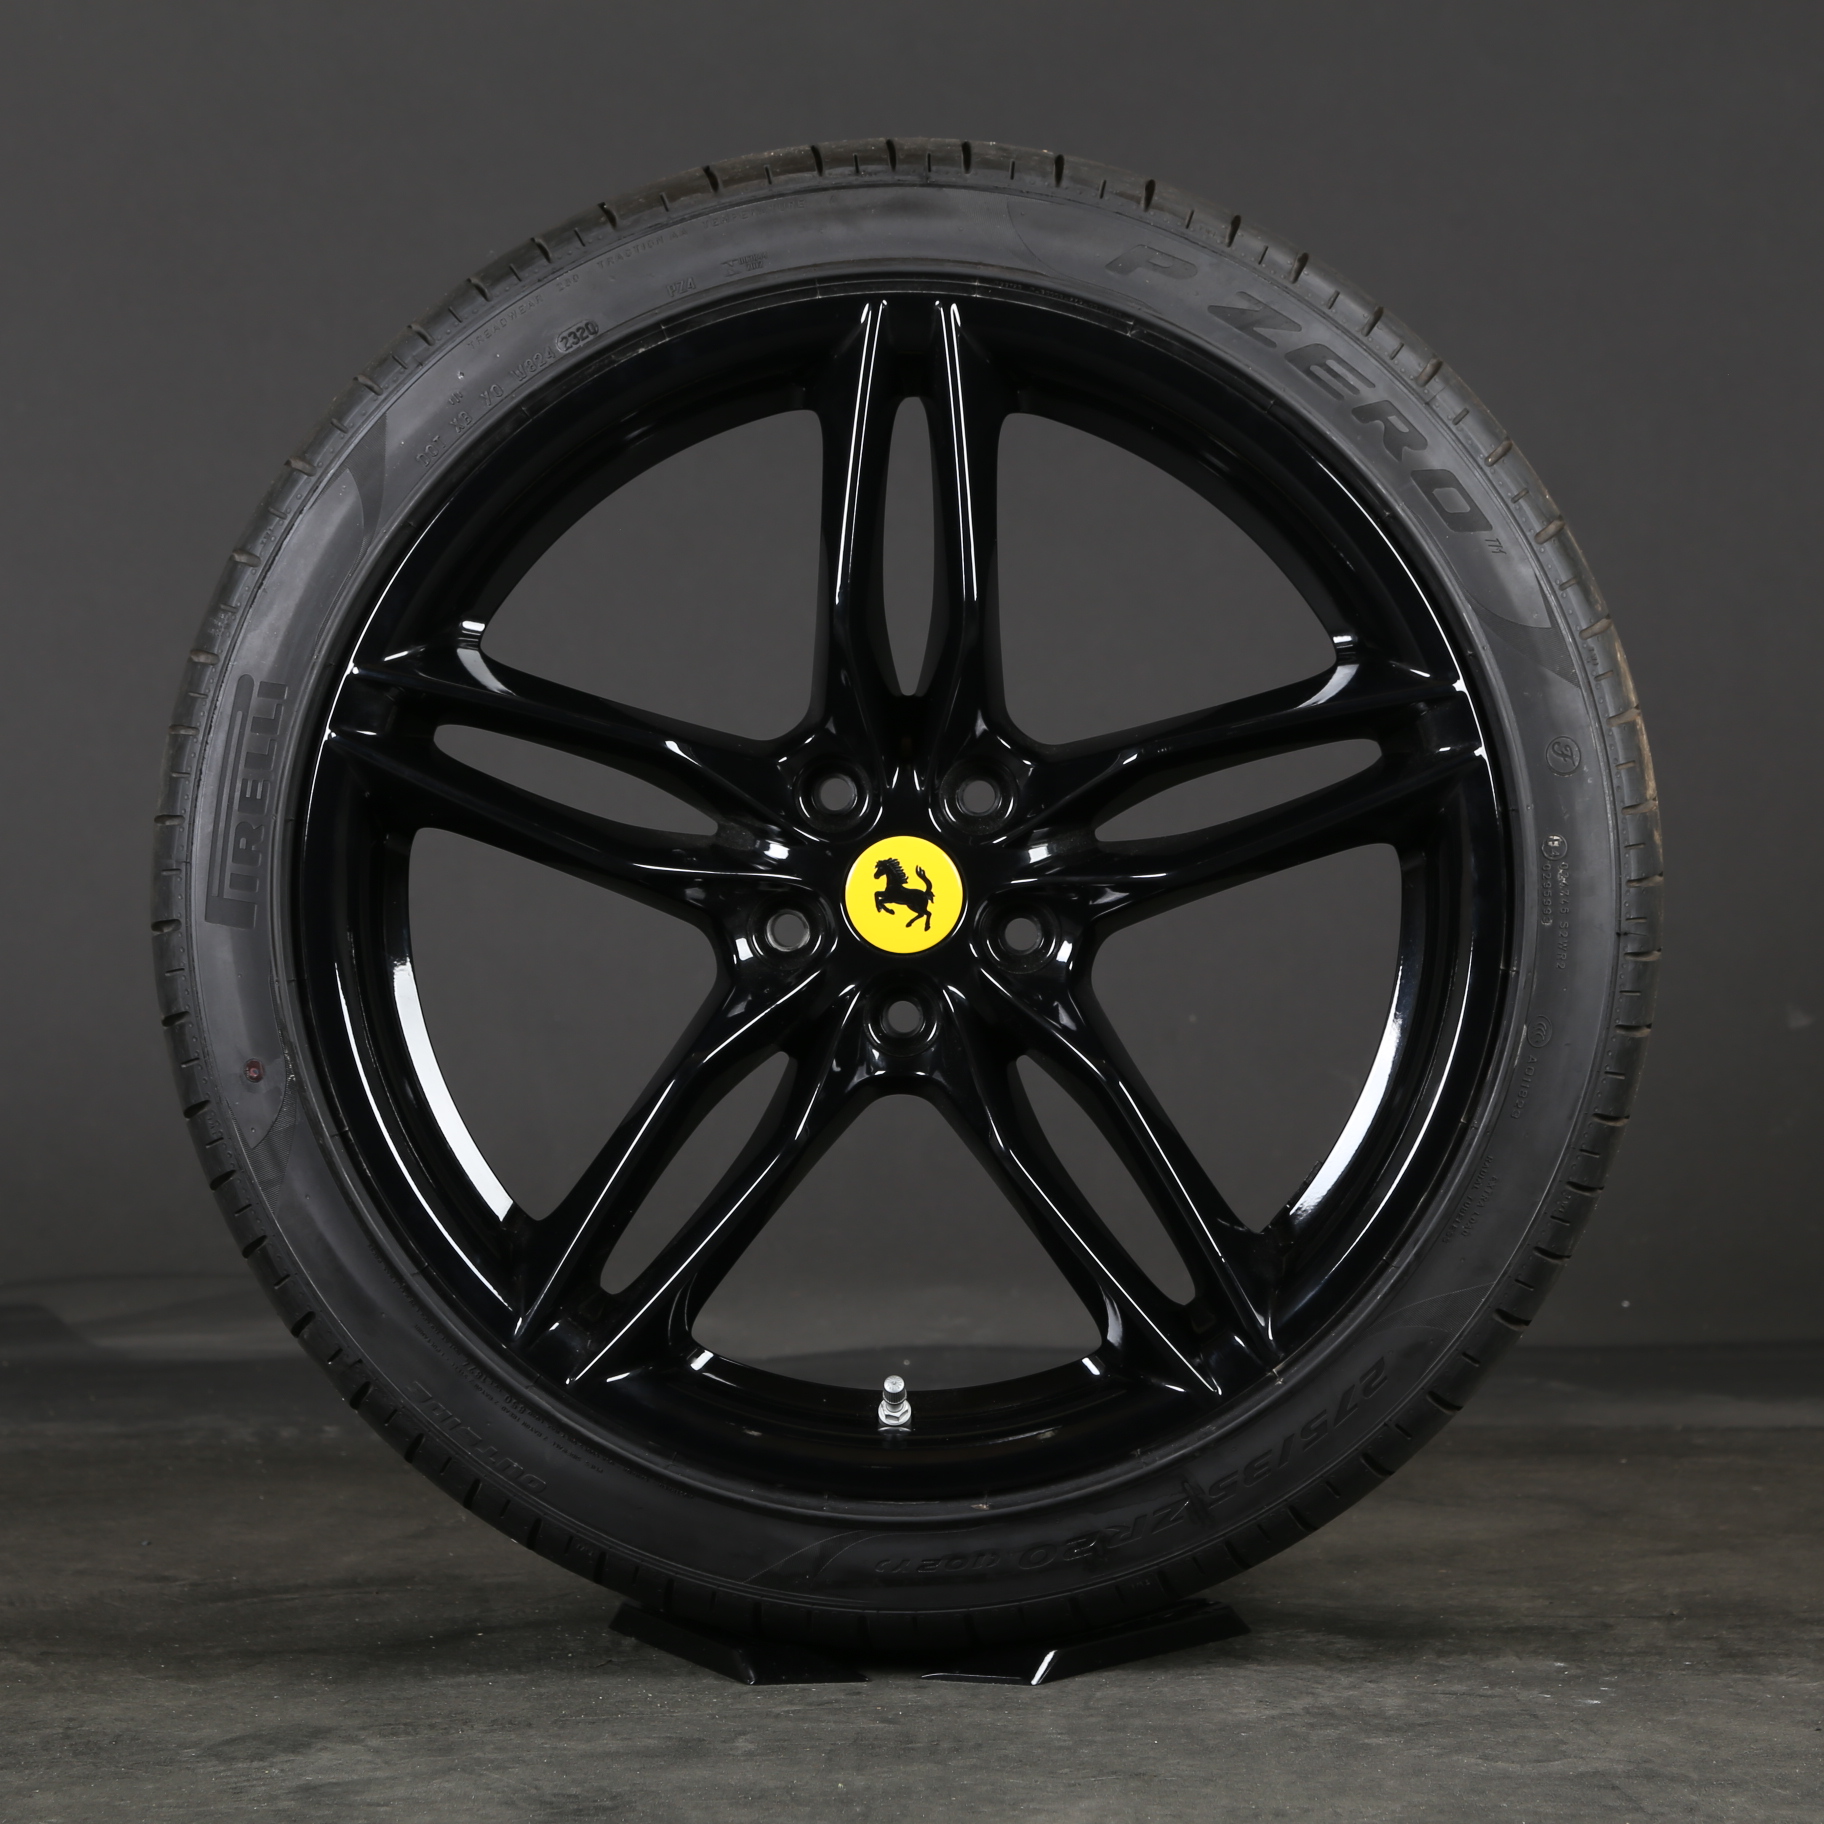 Neumáticos de verano de 20 pulgadas originales Ferrari 812 Superfast 324158 324159